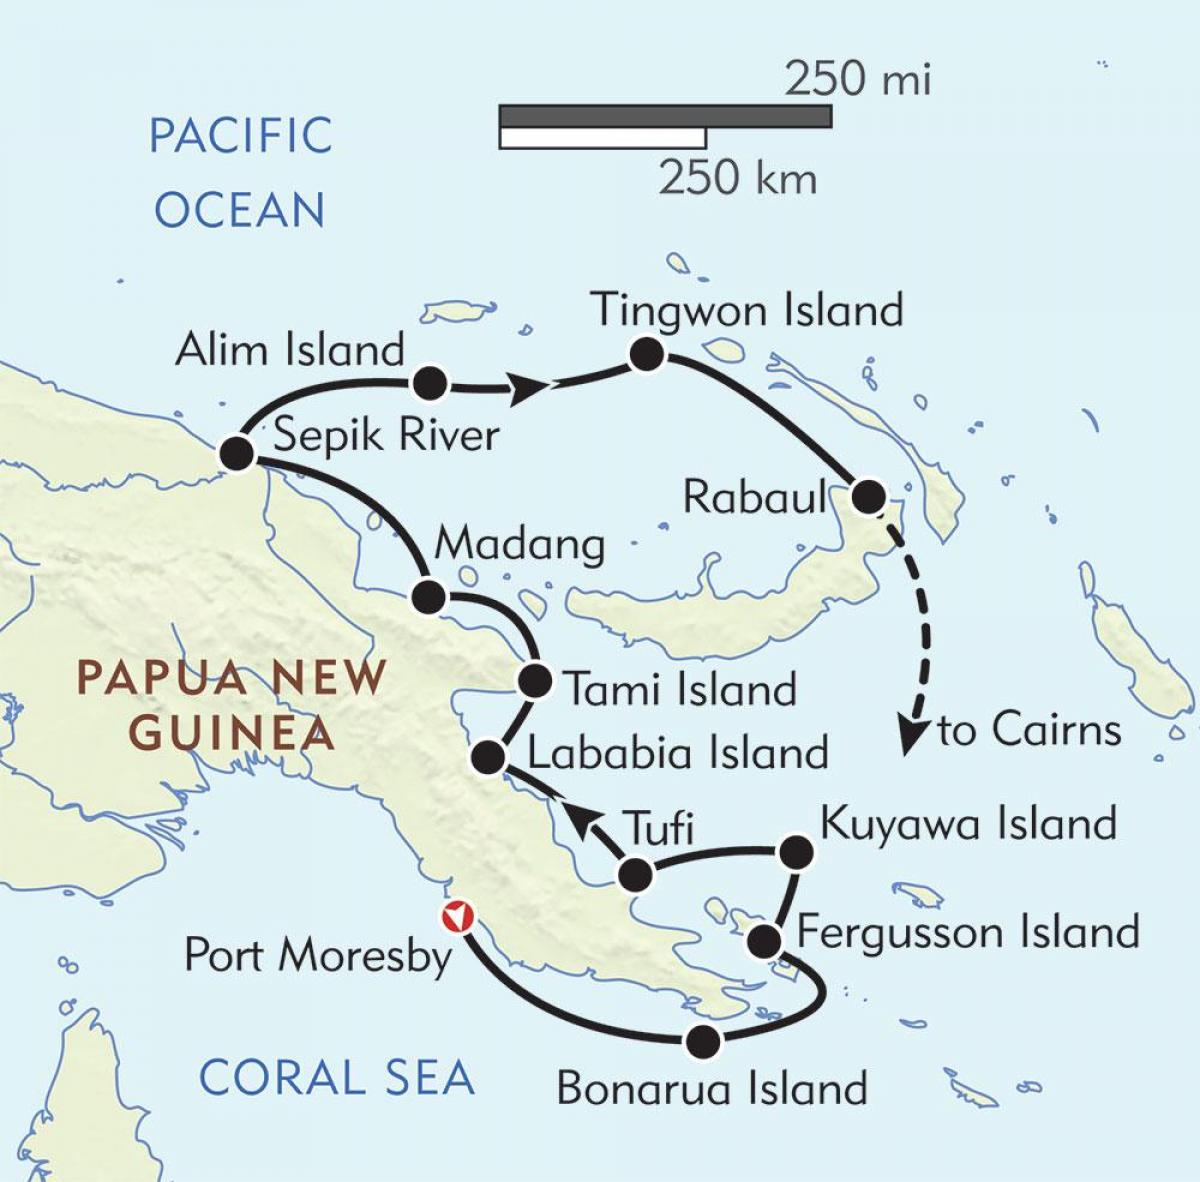 মানচিত্র rabaul পাপুয়া নিউ গিনি